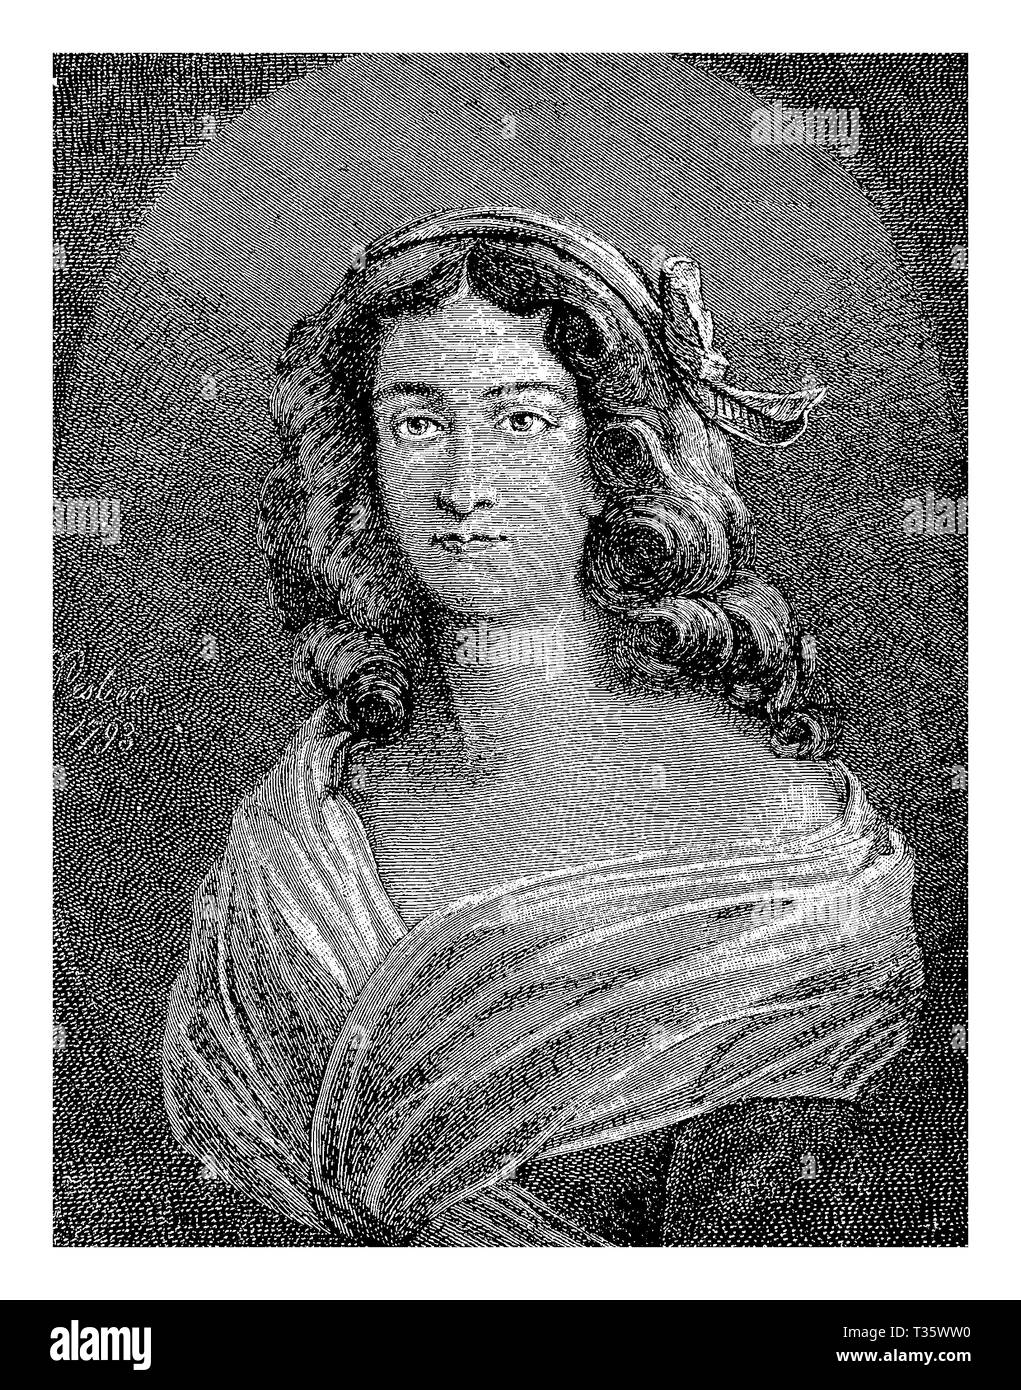 Gravure portrait de Charlotte Corday (1768 - 1793) avec les Girondins sympathisant lors de la Révolution, guillotiné après l'assassinat de Jean-Paul Marat leader Jacobin radical Banque D'Images